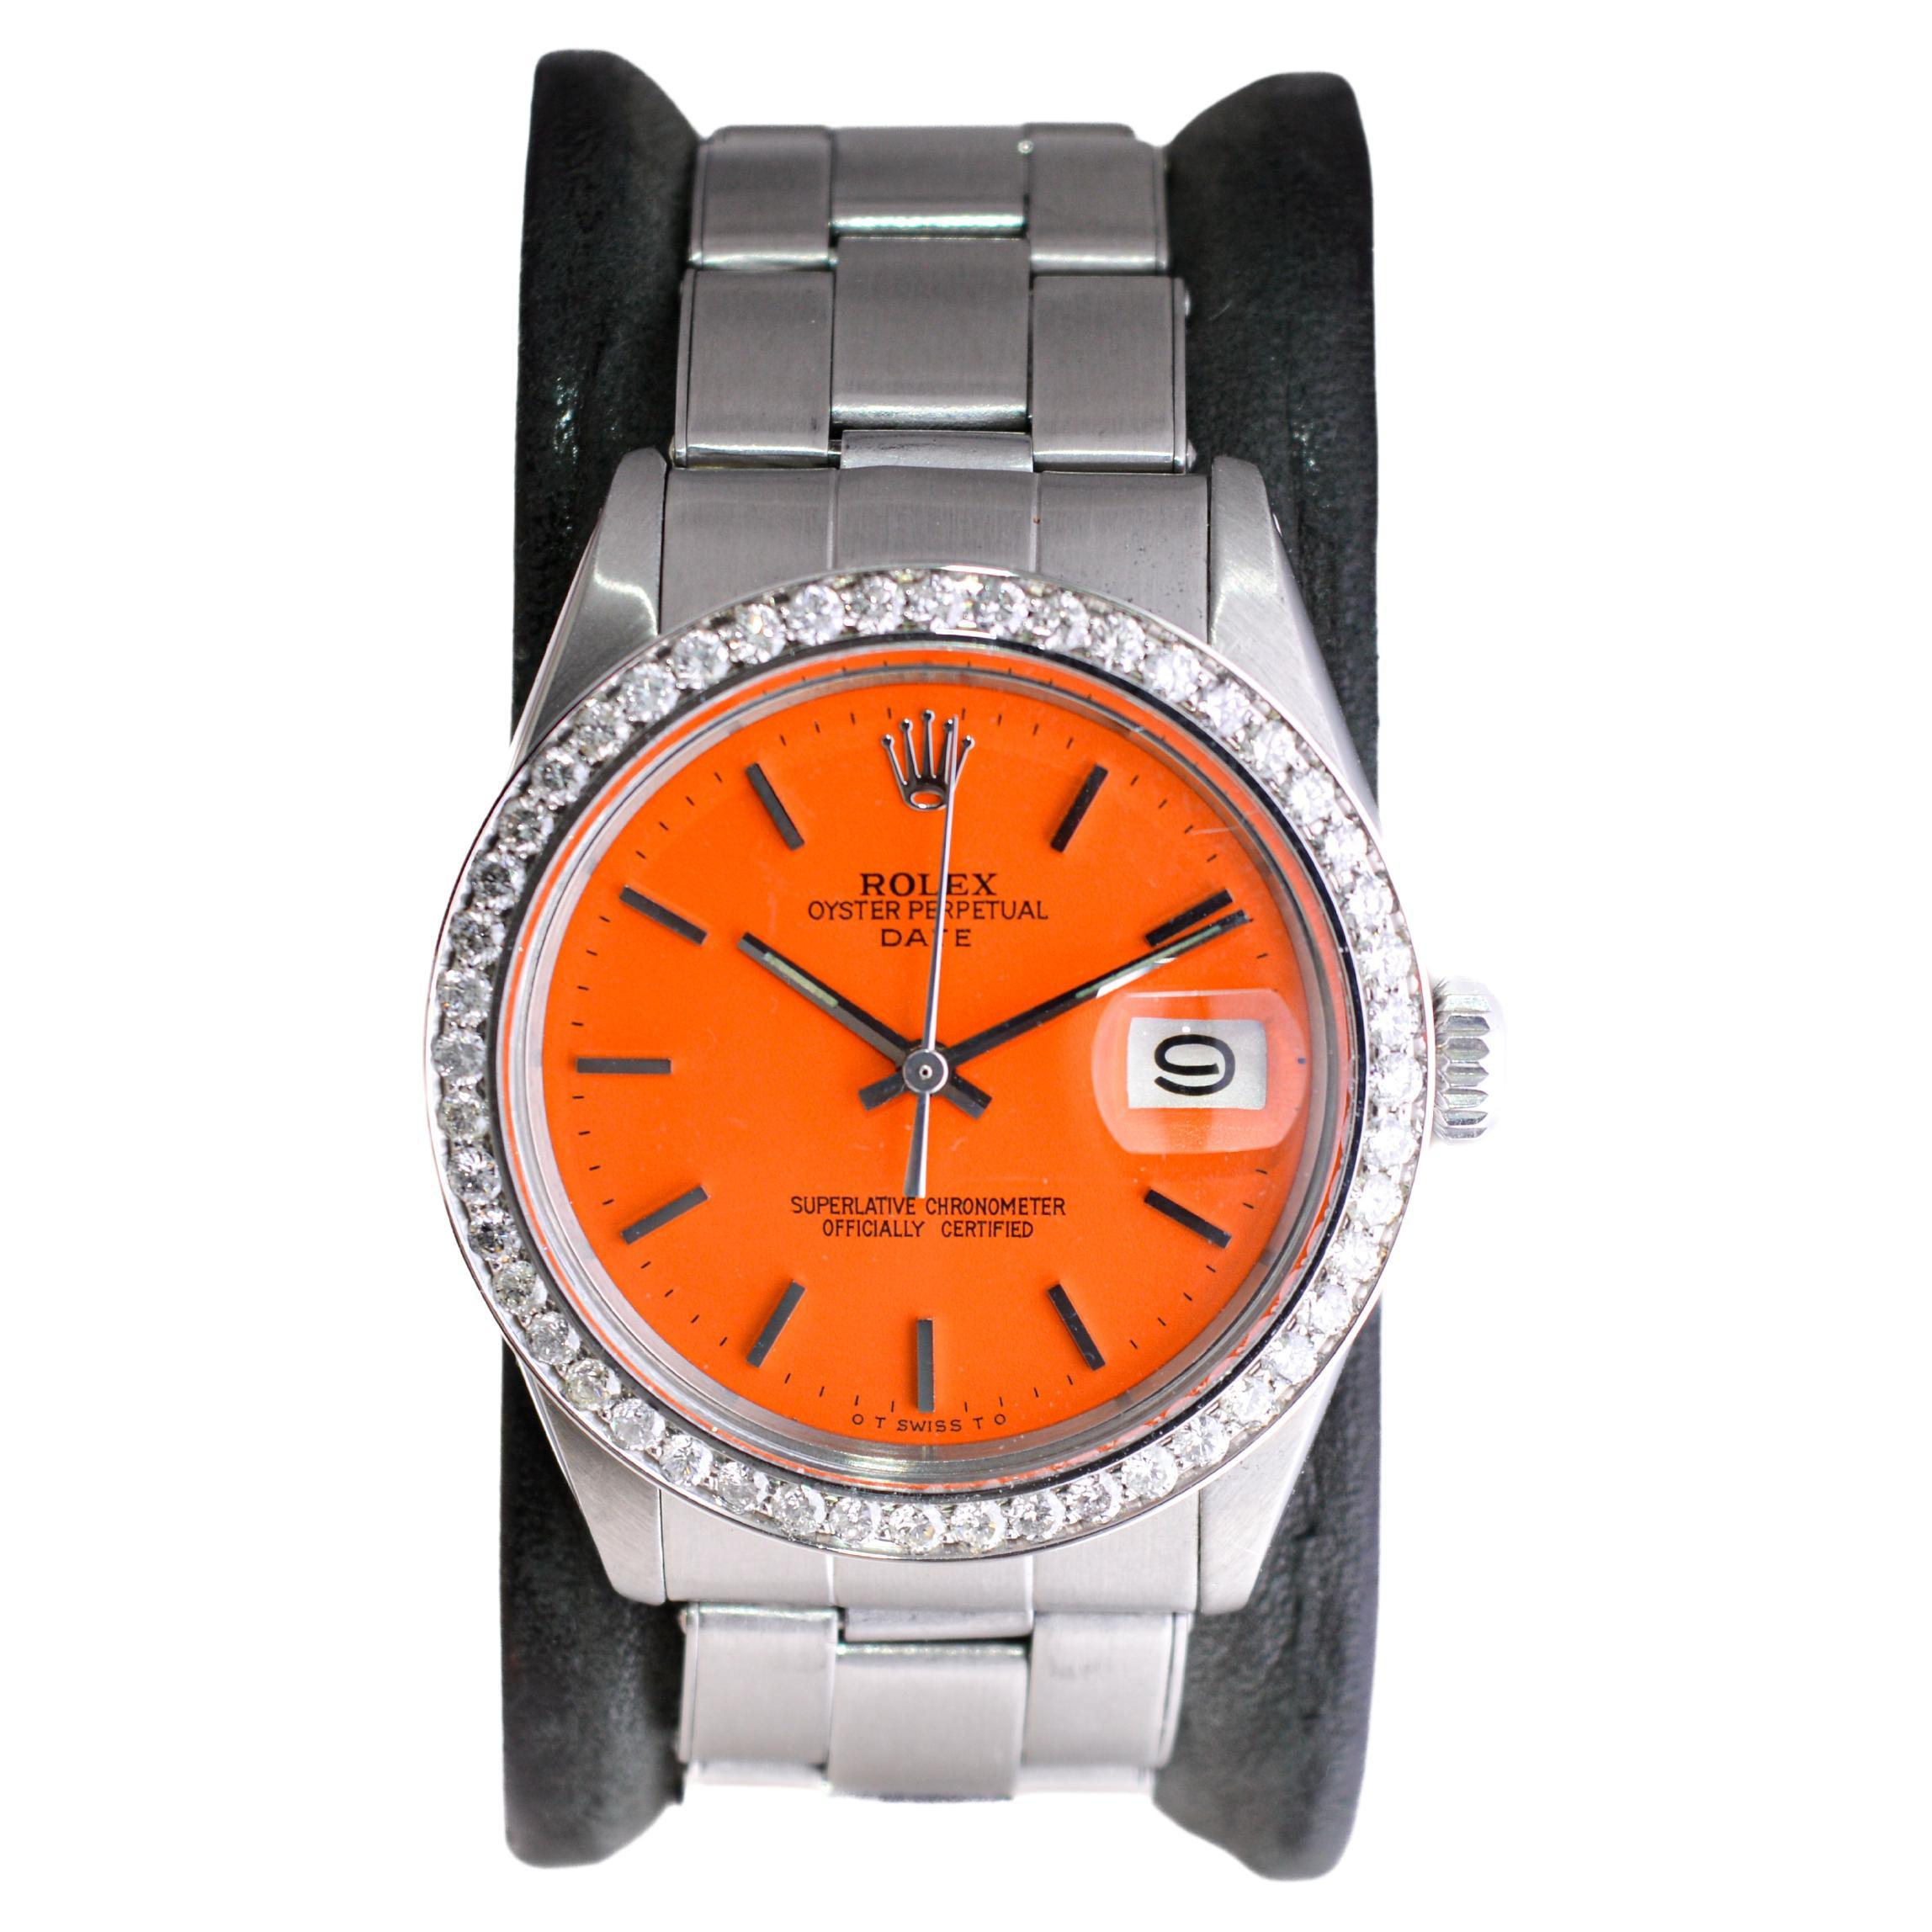 Rolex Oyster Perpetual Date avec cadran orange personnalisé et lunette en diamants